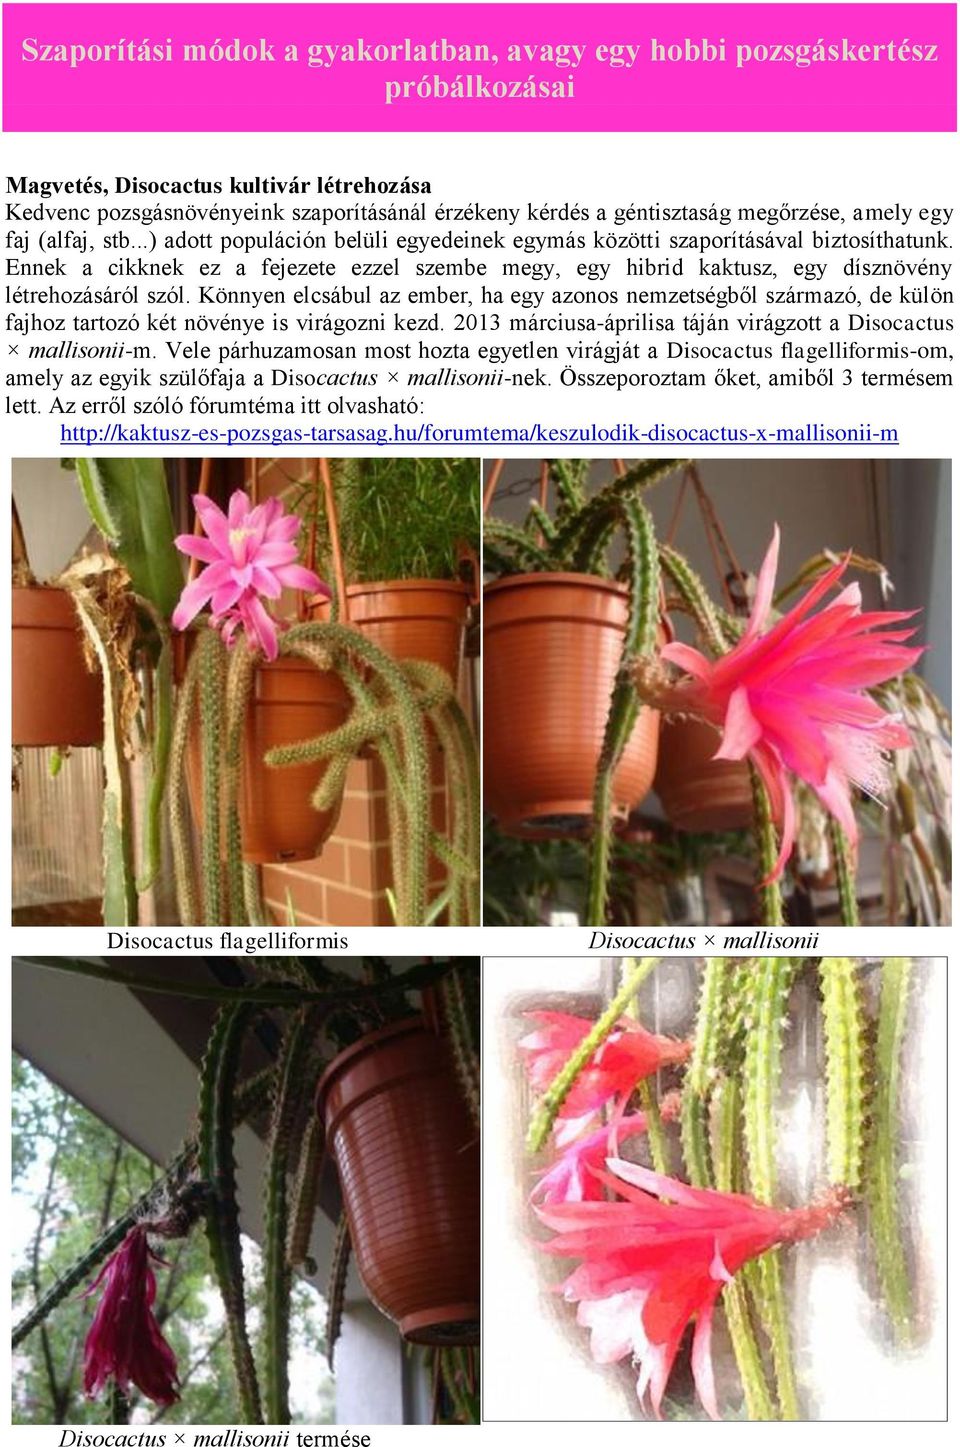 Ennek a cikknek ez a fejezete ezzel szembe megy, egy hibrid kaktusz, egy dísznövény létrehozásáról szól.